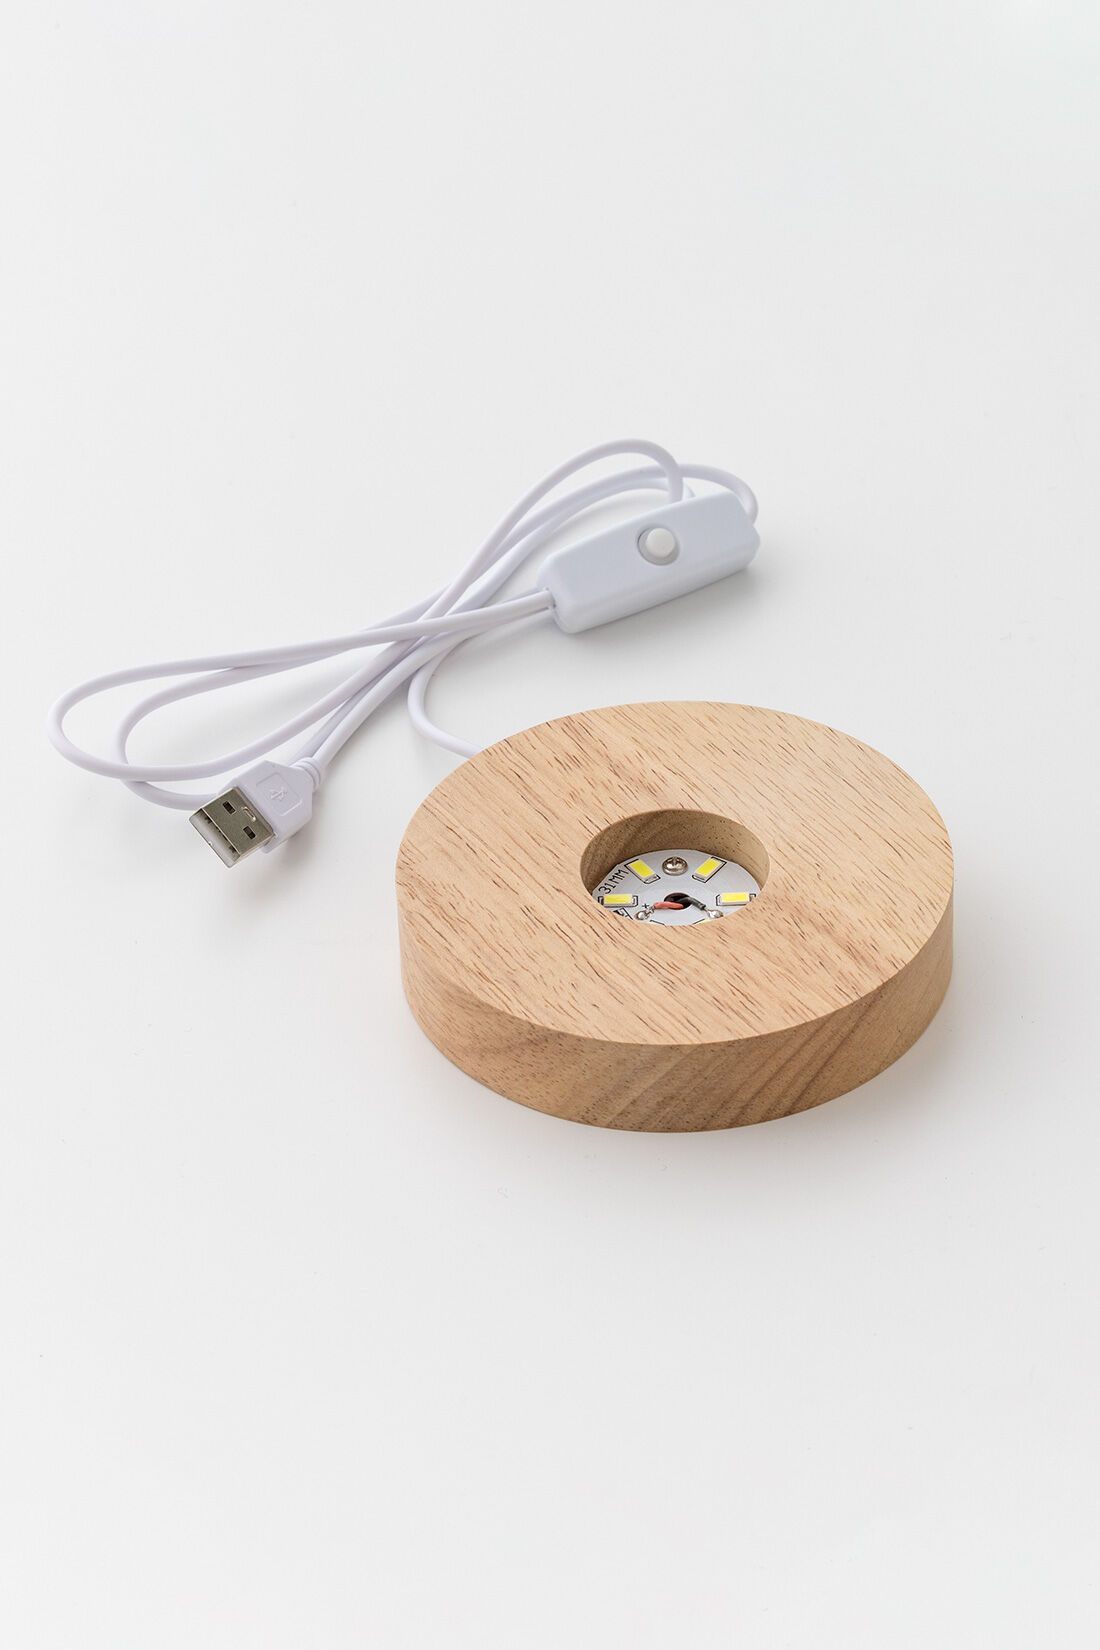 SeeMONO|お気に入りをライトアップしてくれる木製LEDスタンド〈大〉|●1回のお届けセットです。